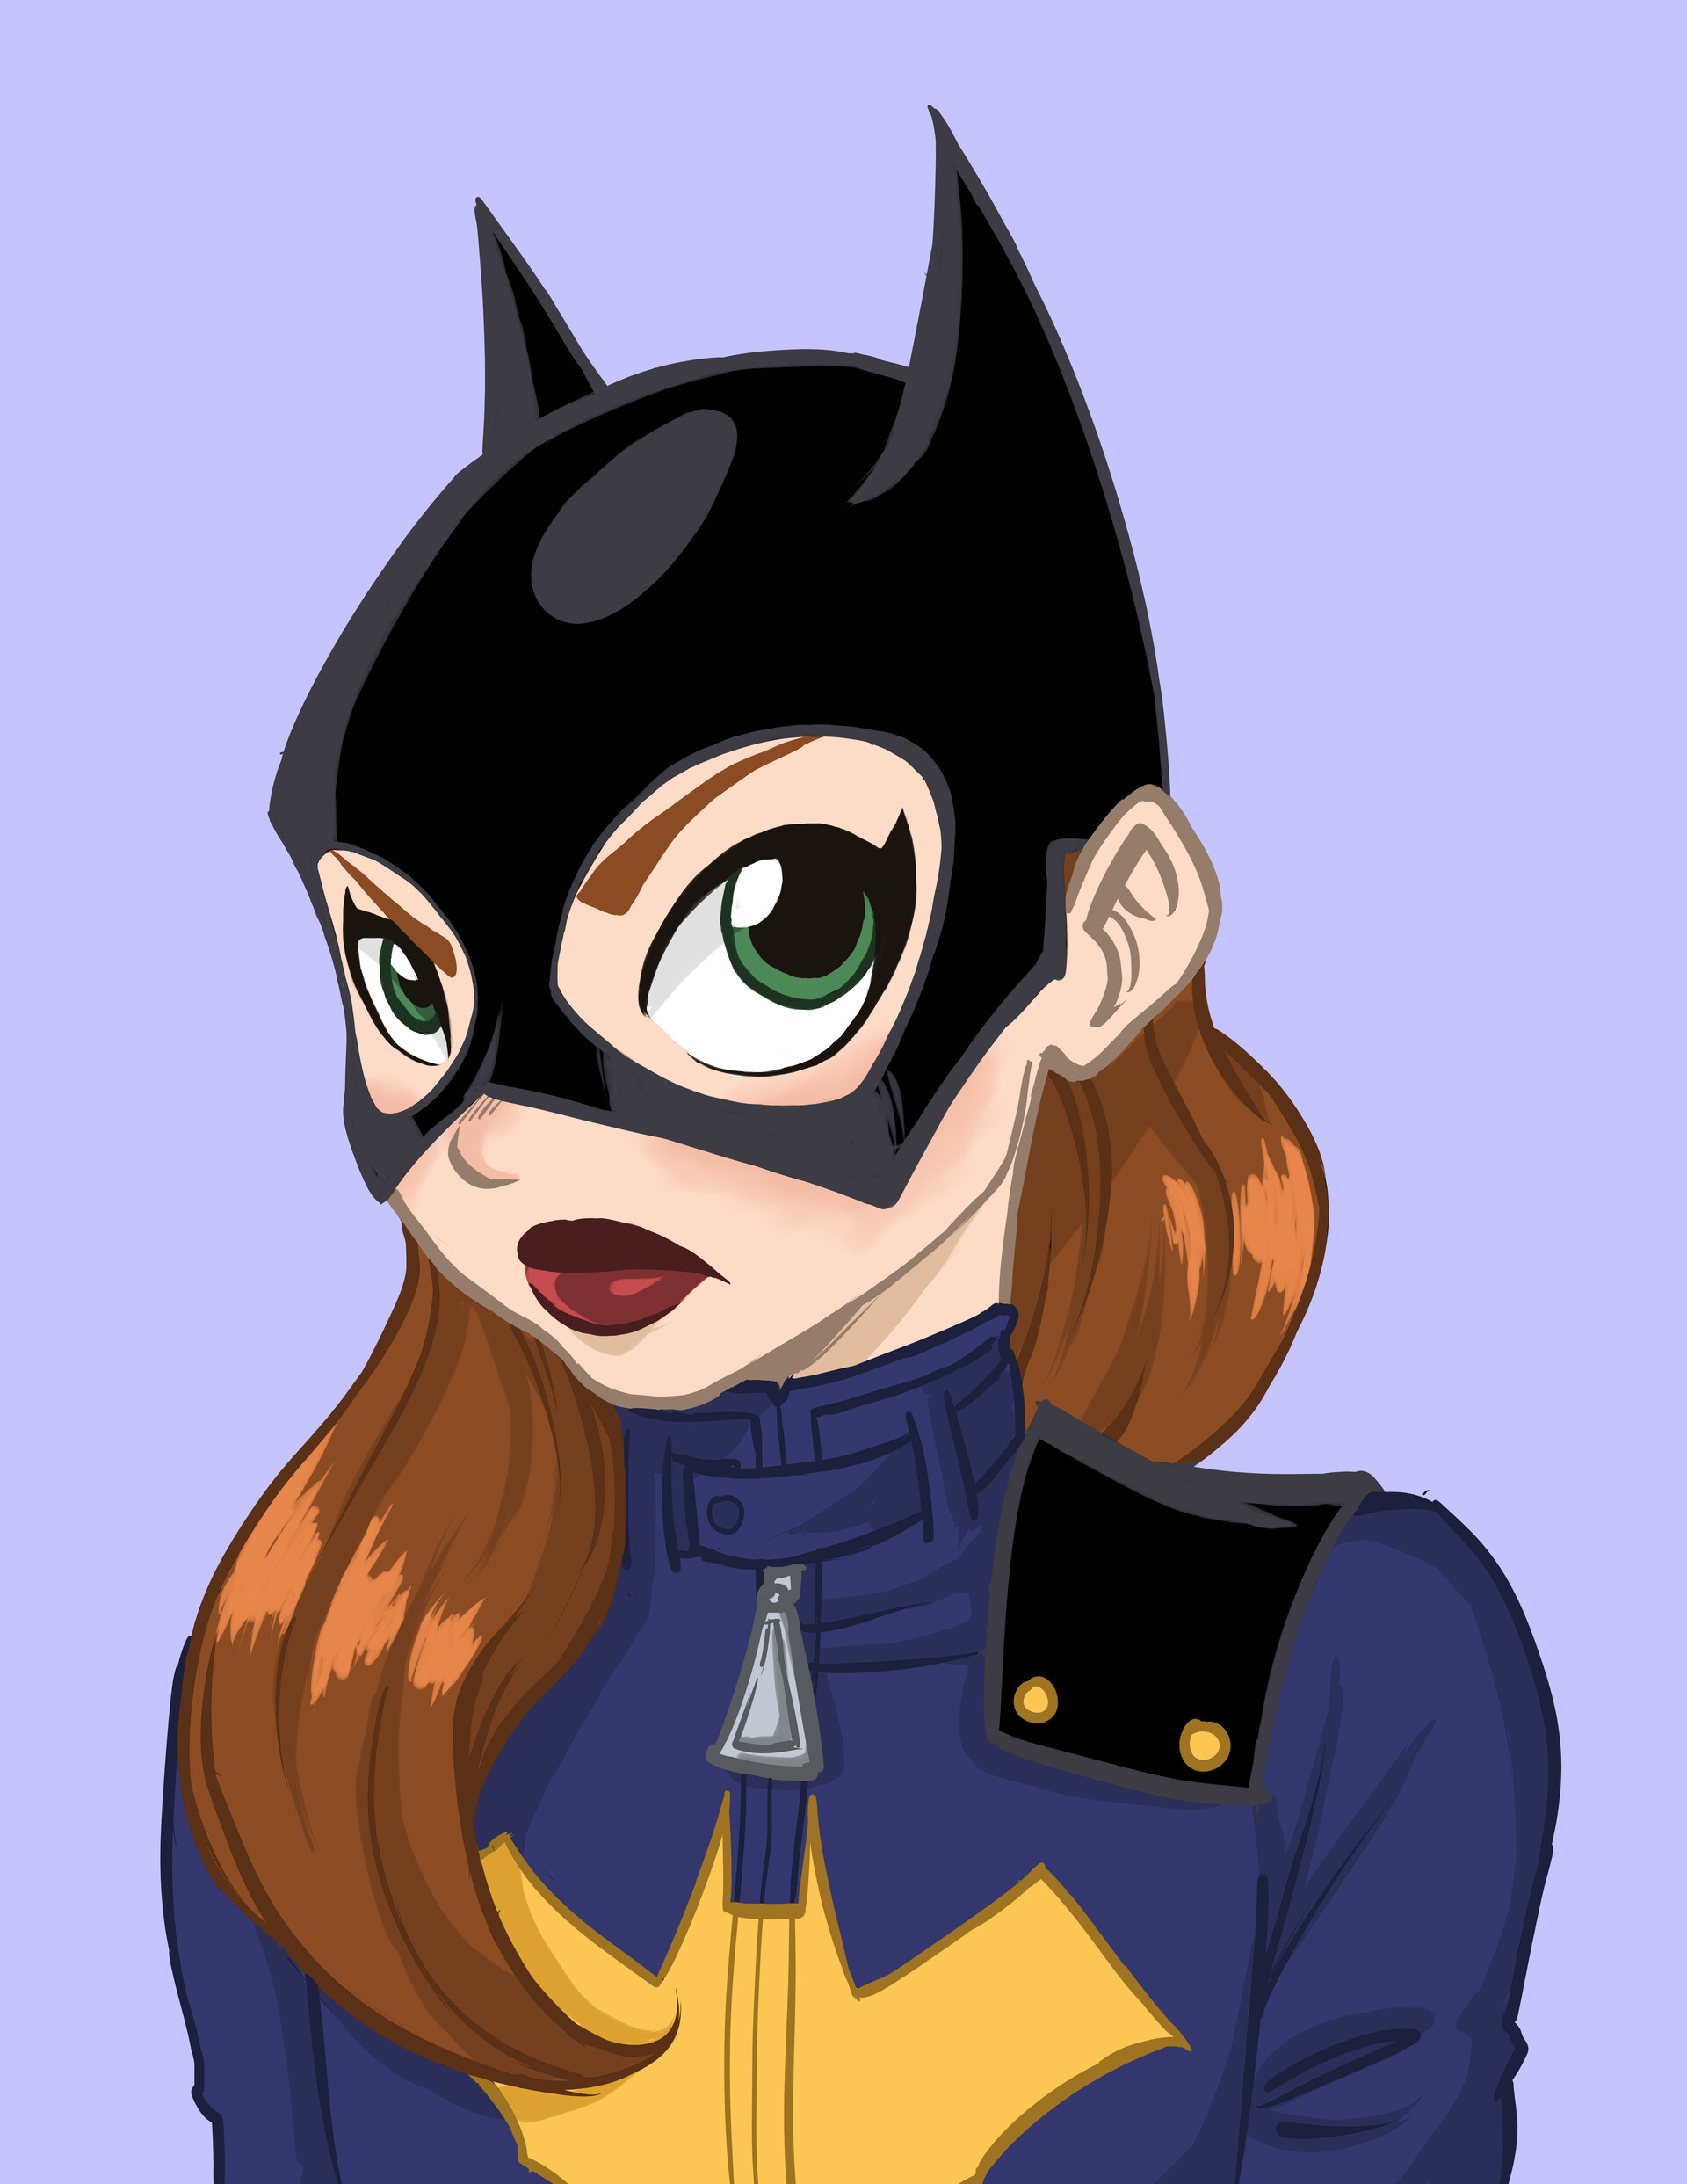 Barbara Gordon aka Batgirl fan art.